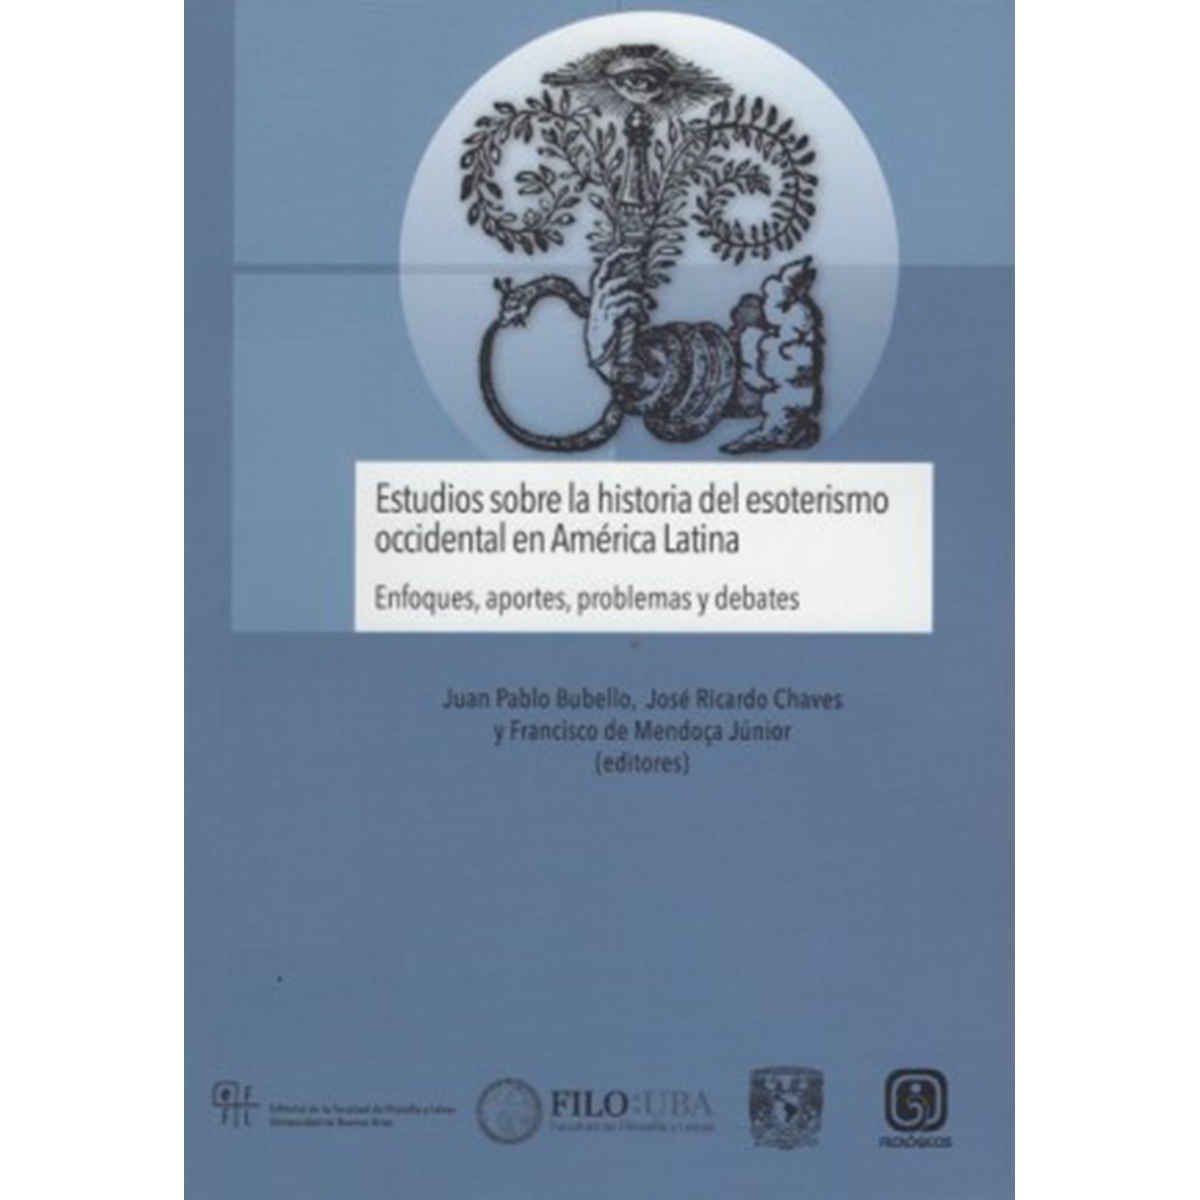 ESTUDIOS SOBRE LA HISTORIA DEL ESOTERISMO OCCIDENTAL EN AMÉRICA LATINA: ENFOQUES, APORTES, PROBLEMAS Y DEBATES